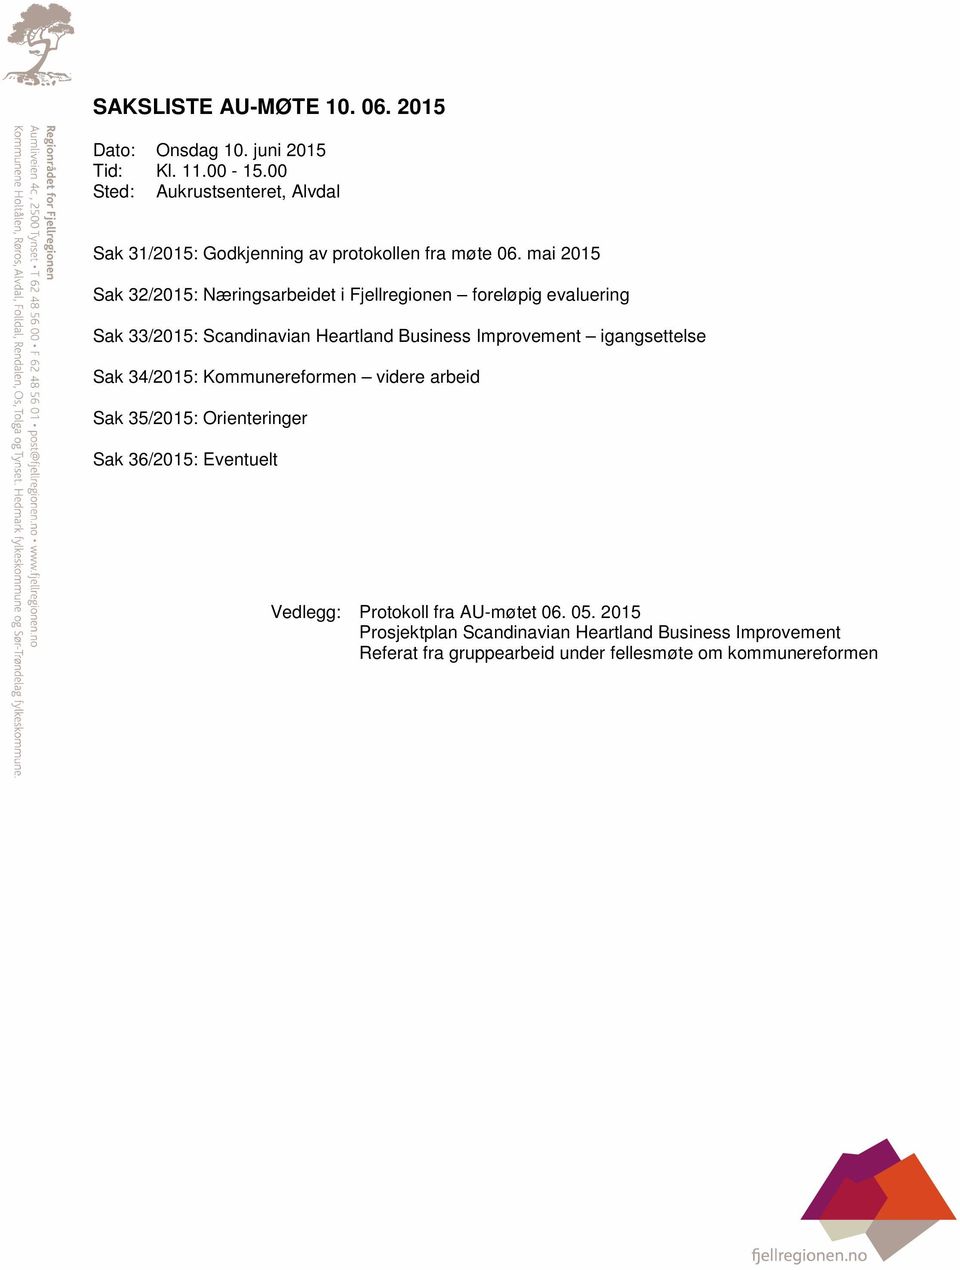 mai 2015 Sak 32/2015: Næringsarbeidet i Fjellregionen foreløpig evaluering Sak 33/2015: Scandinavian Heartland Business Improvement